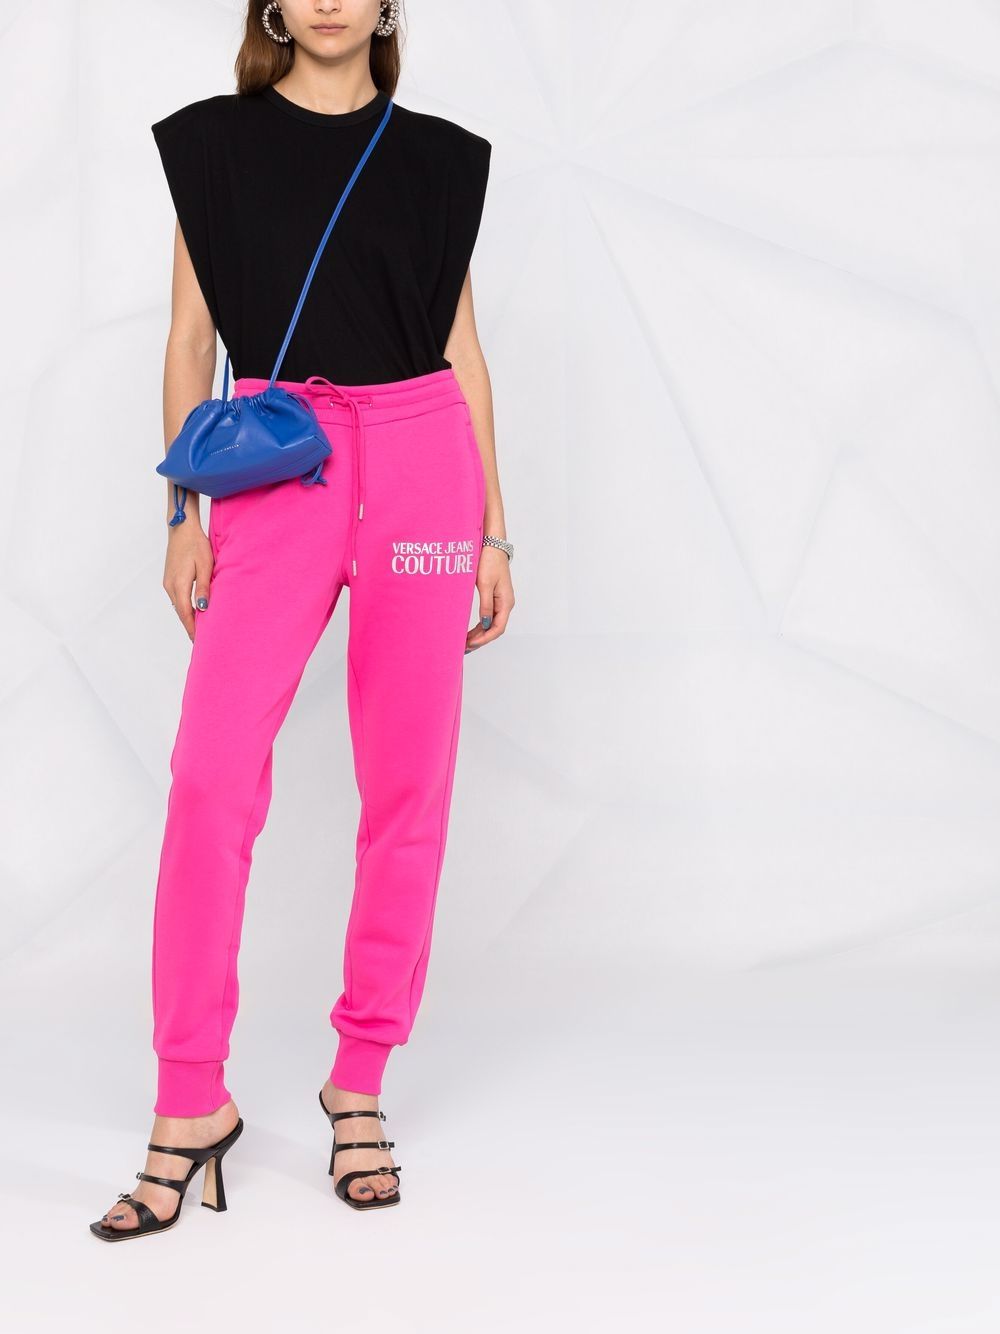 фото Versace jeans couture спортивные брюки с логотипом